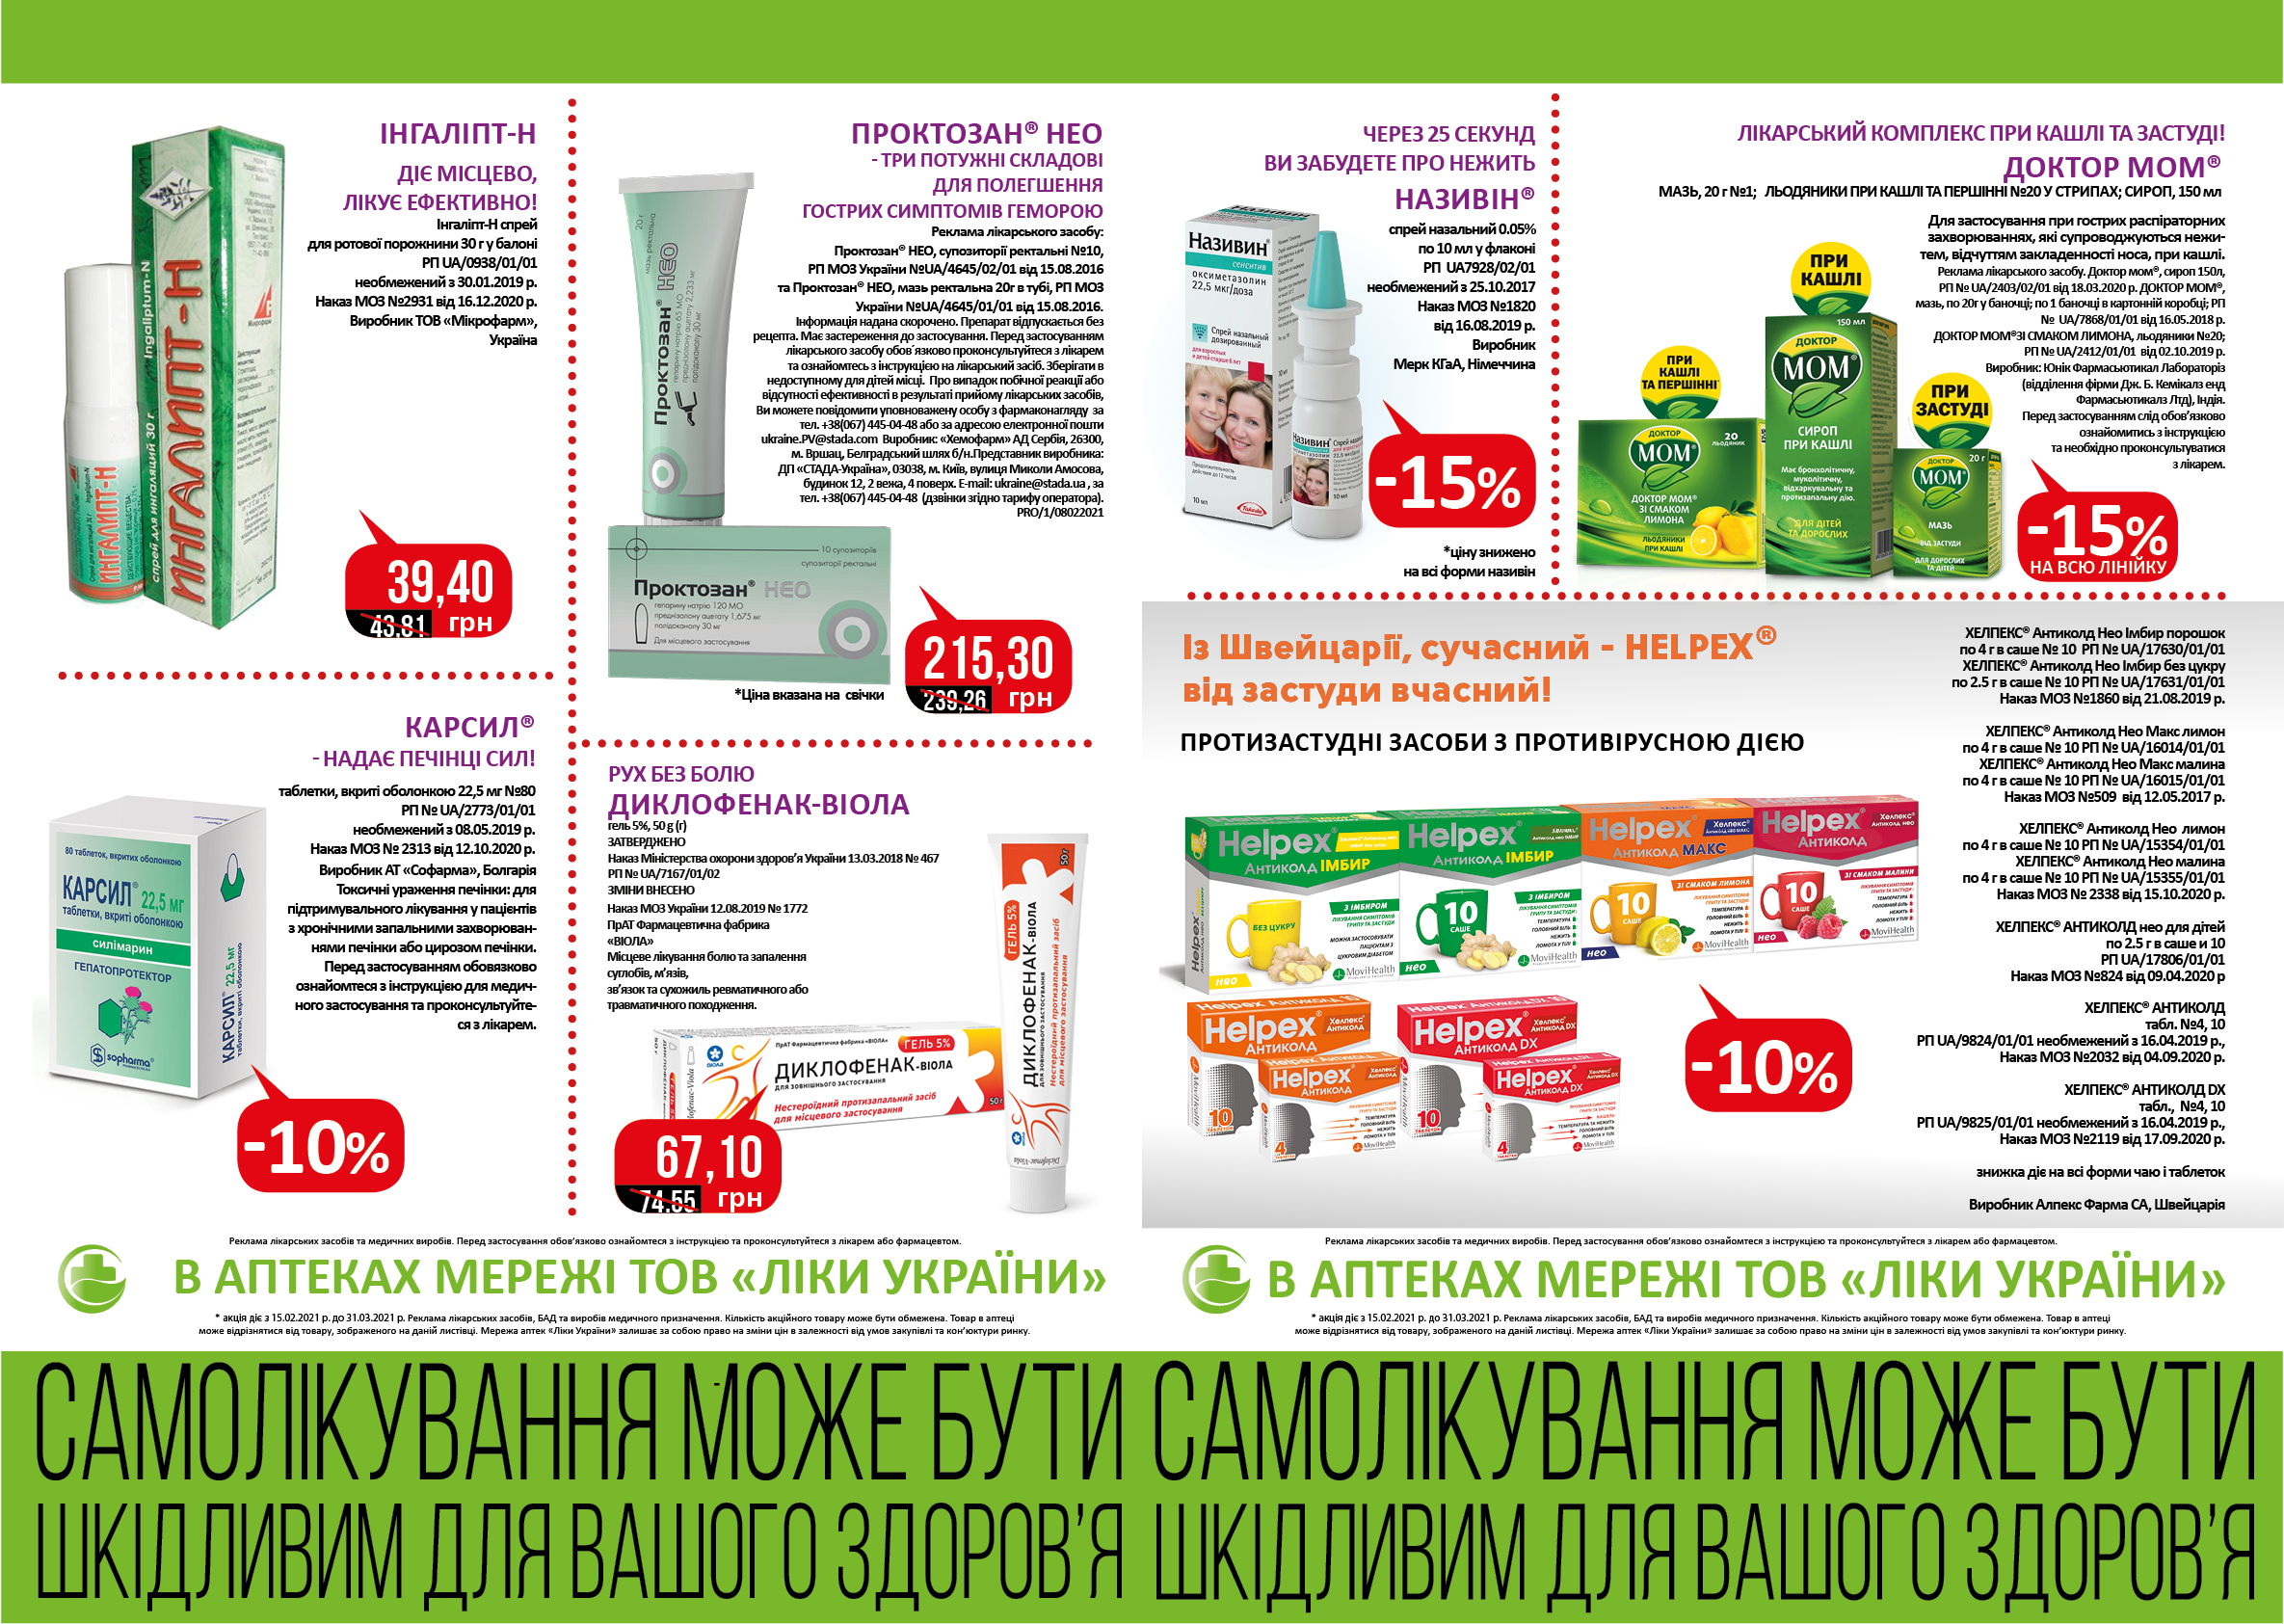 В аптеках мережі ТОВ "Ліки України" з 15.02 по 31.03 діє акція